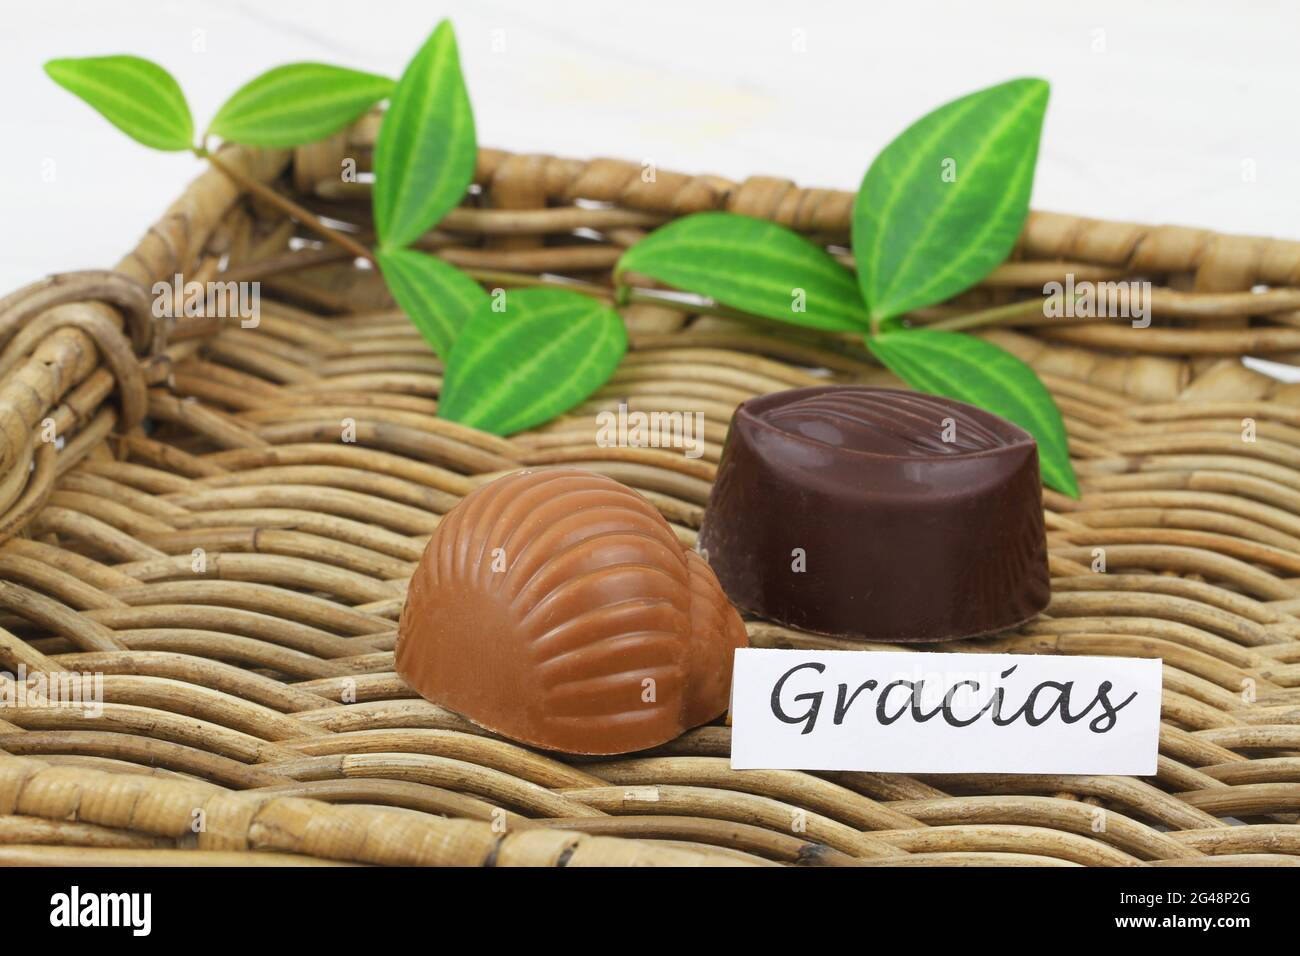 Carte Gracias (merci en espagnol) avec deux chocolats laiteux sur plateau en osier Banque D'Images